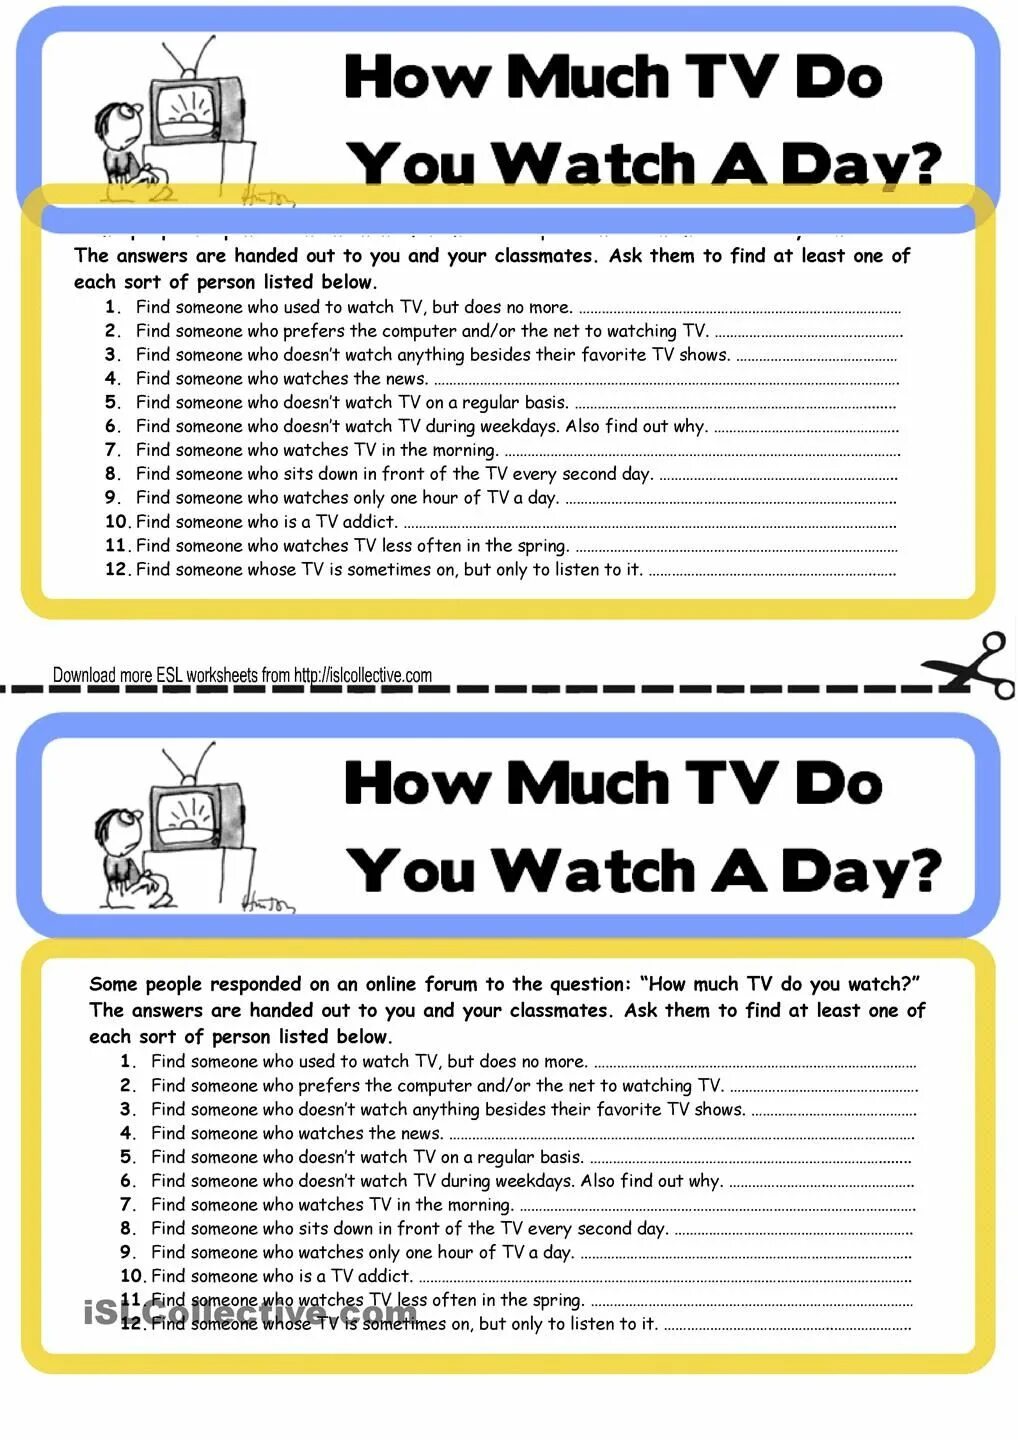 Kinds of programs. Телевидение Worksheets. Types of films Worksheets. Television Vocabulary Worksheets. Films Vocabulary Worksheets.